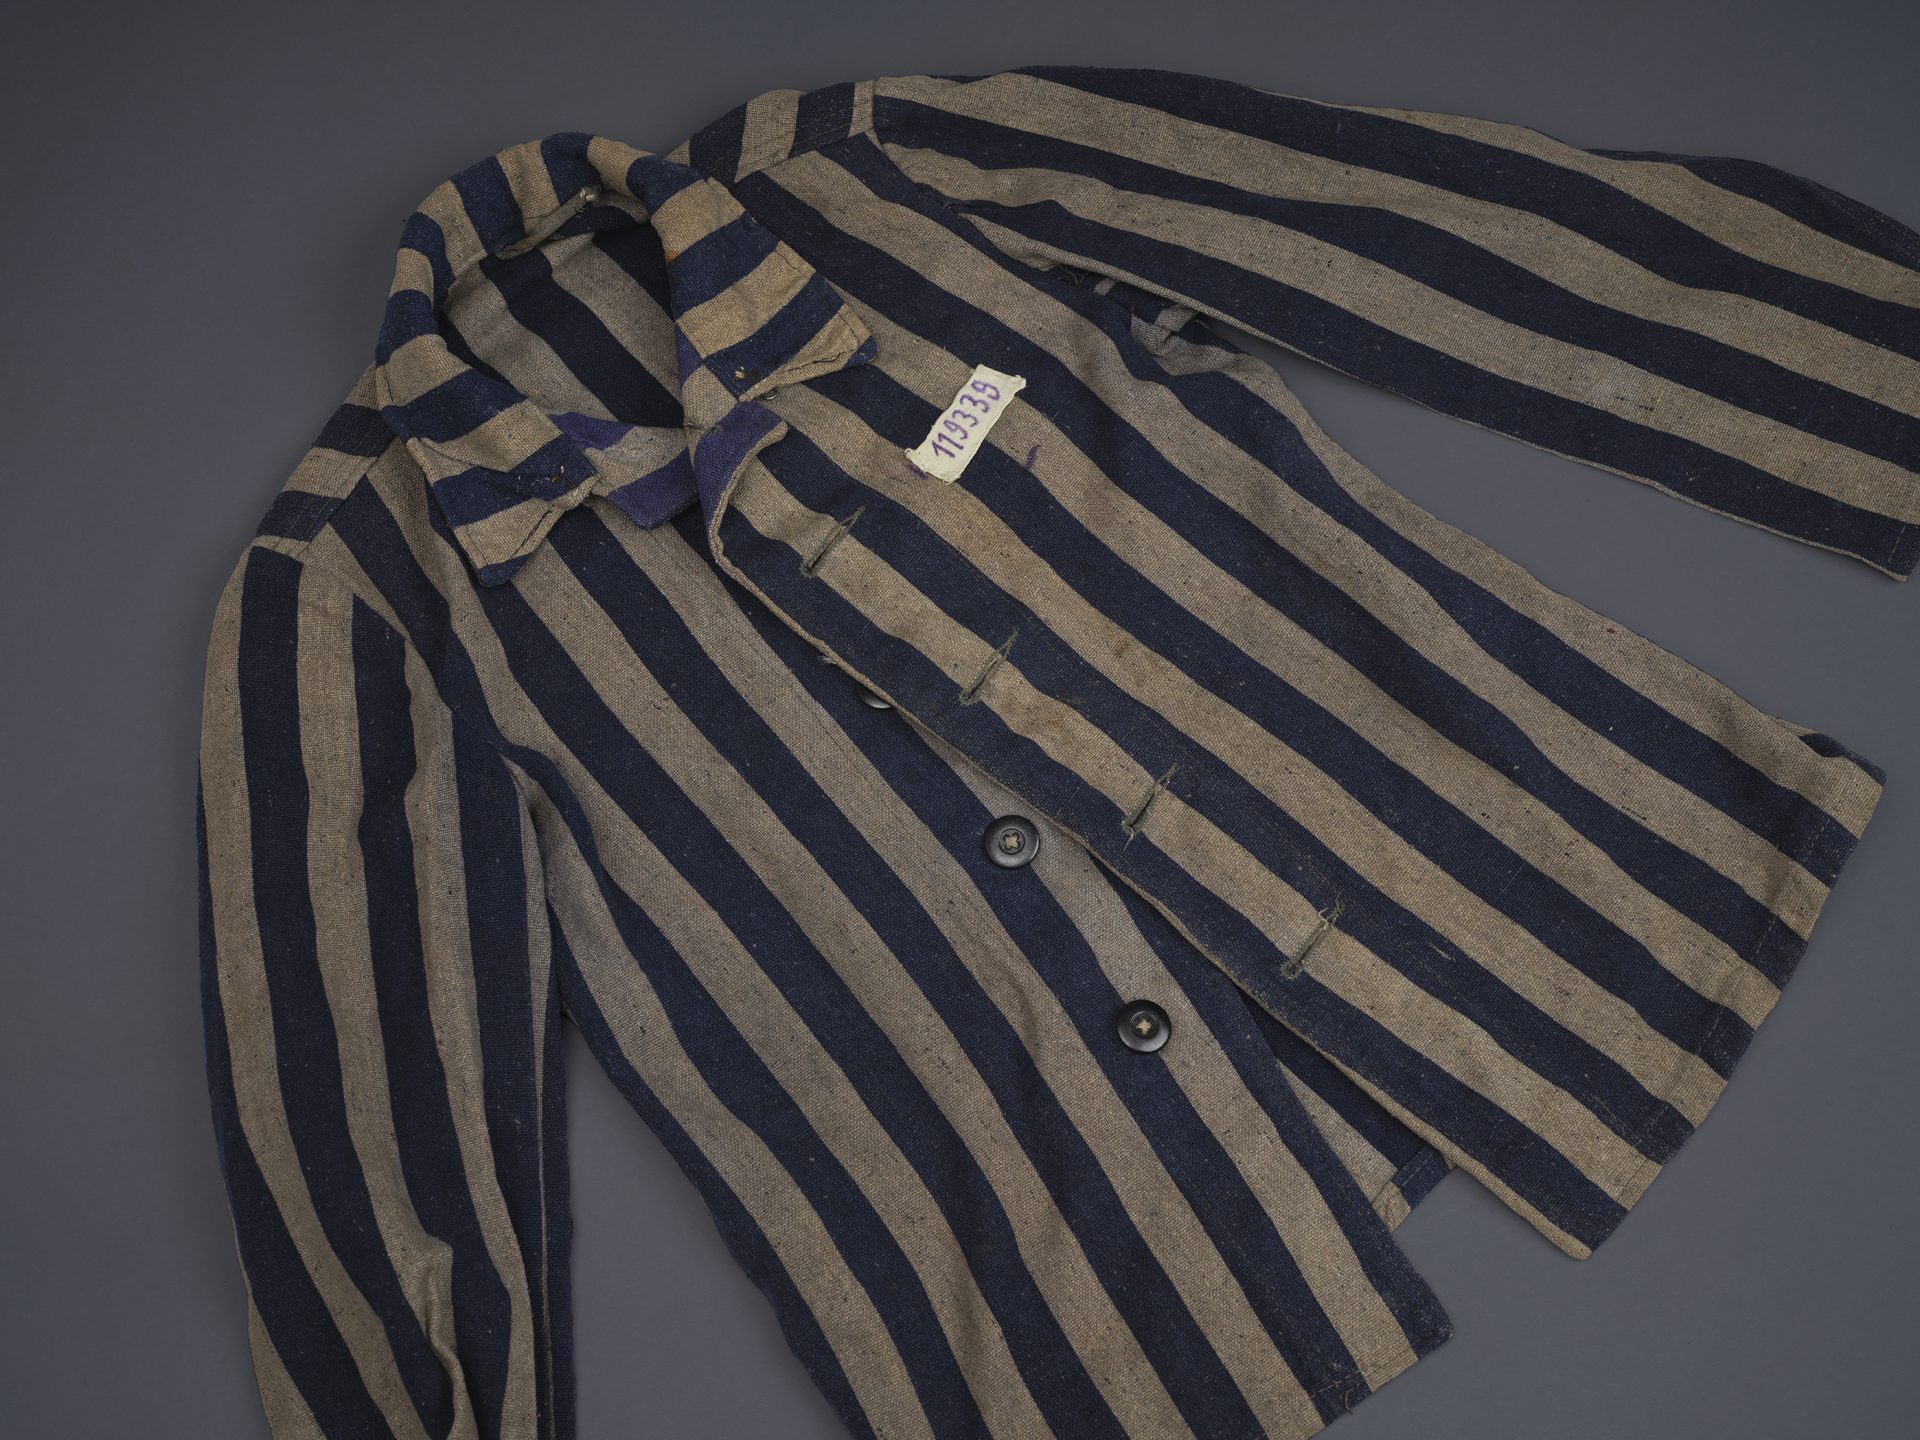 Striped prisoner jacket.